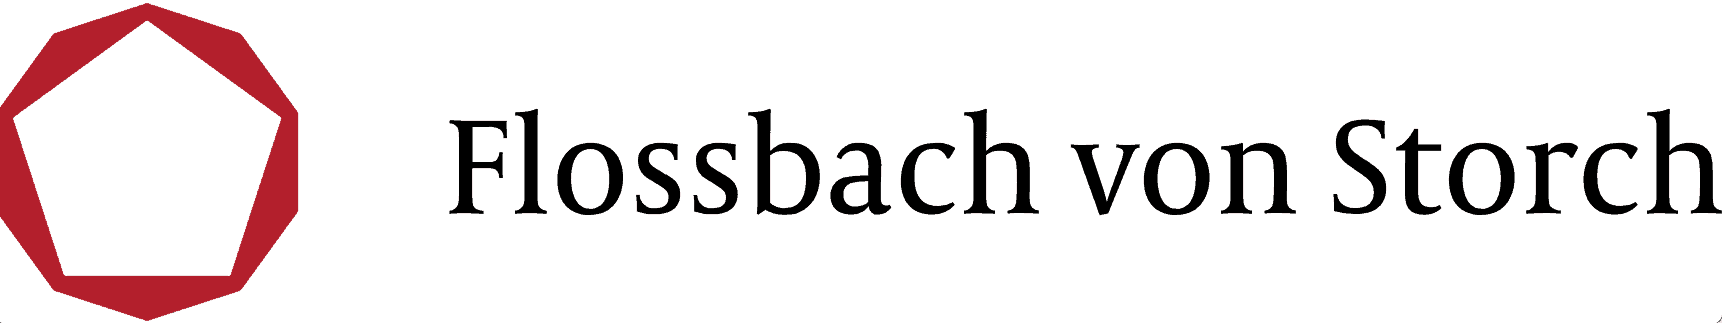 logo flossbach von Storch